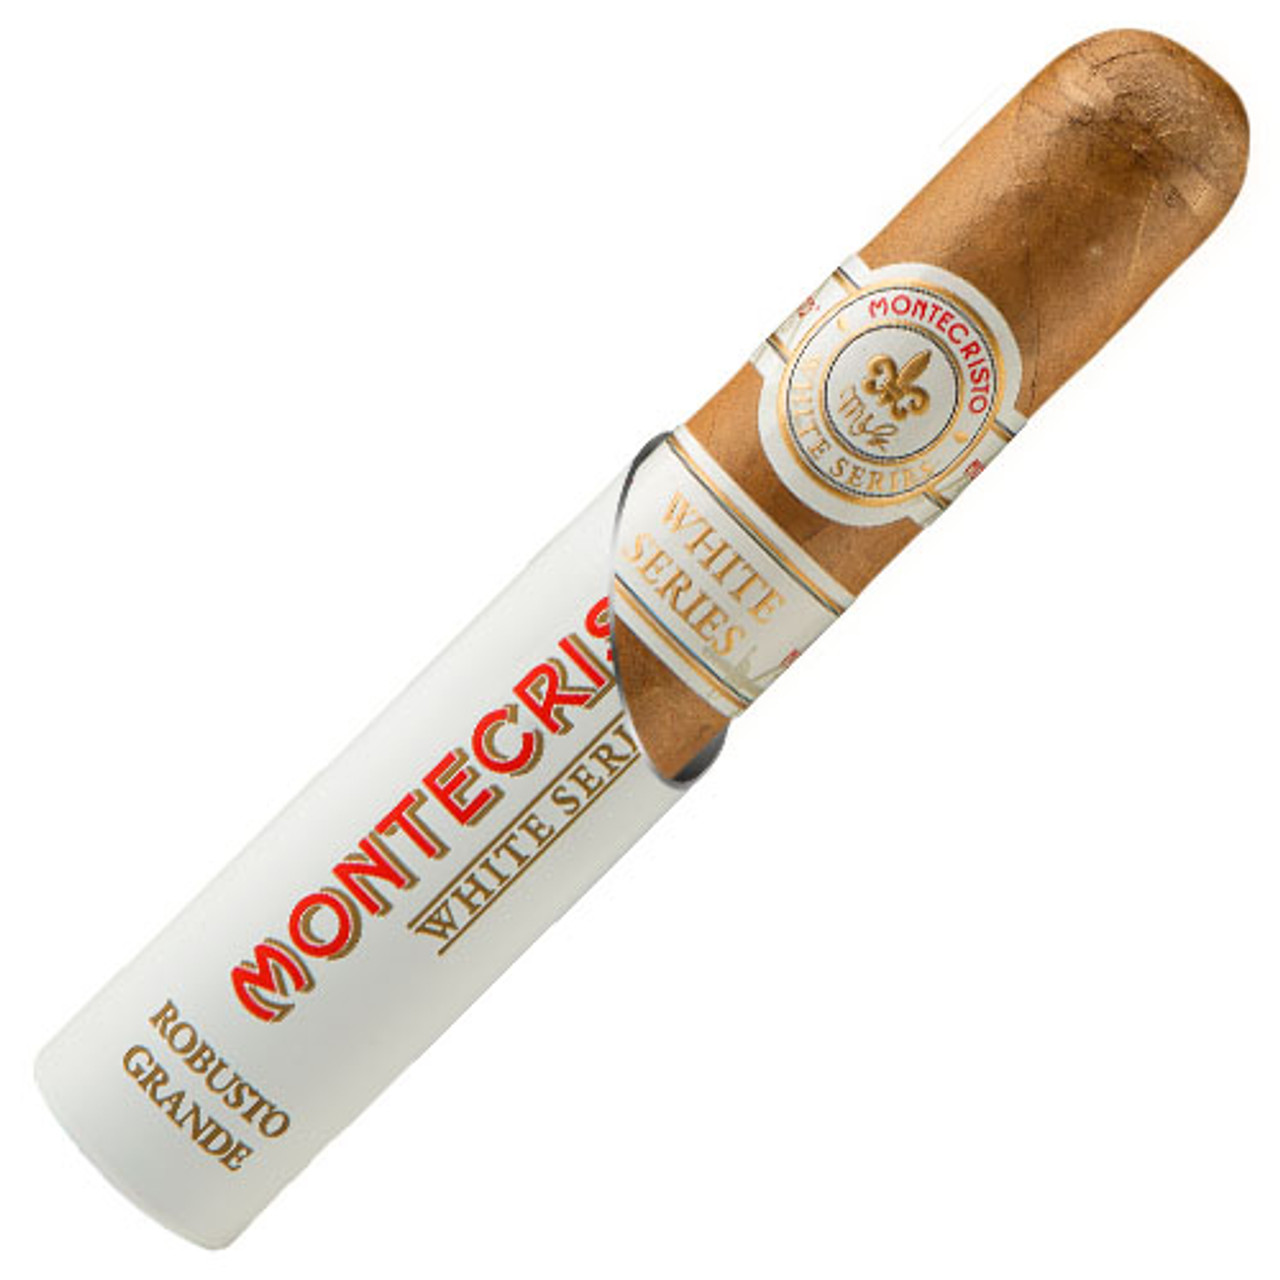 Montecristo White Series Robusto Grande Tube - 5 x 52 Cigars (Box of 15)